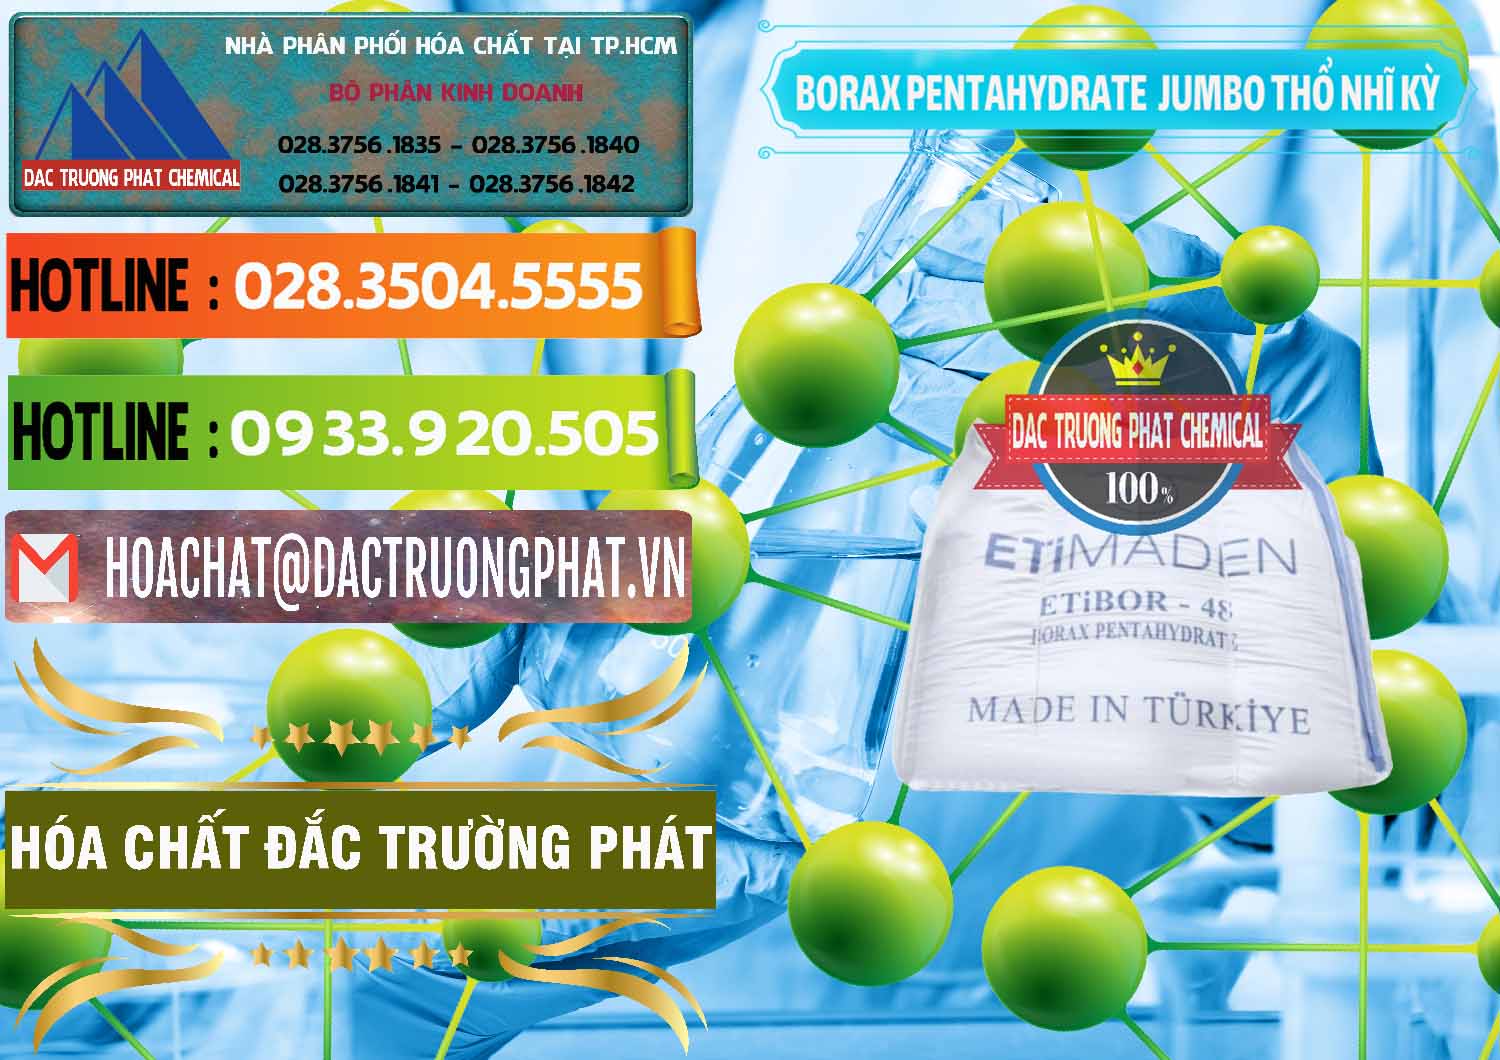 Bán Borax Pentahydrate Bao Jumbo ( Bành ) Thổ Nhĩ Kỳ Turkey - 0424 - Công ty bán & phân phối hóa chất tại TP.HCM - cungcaphoachat.com.vn